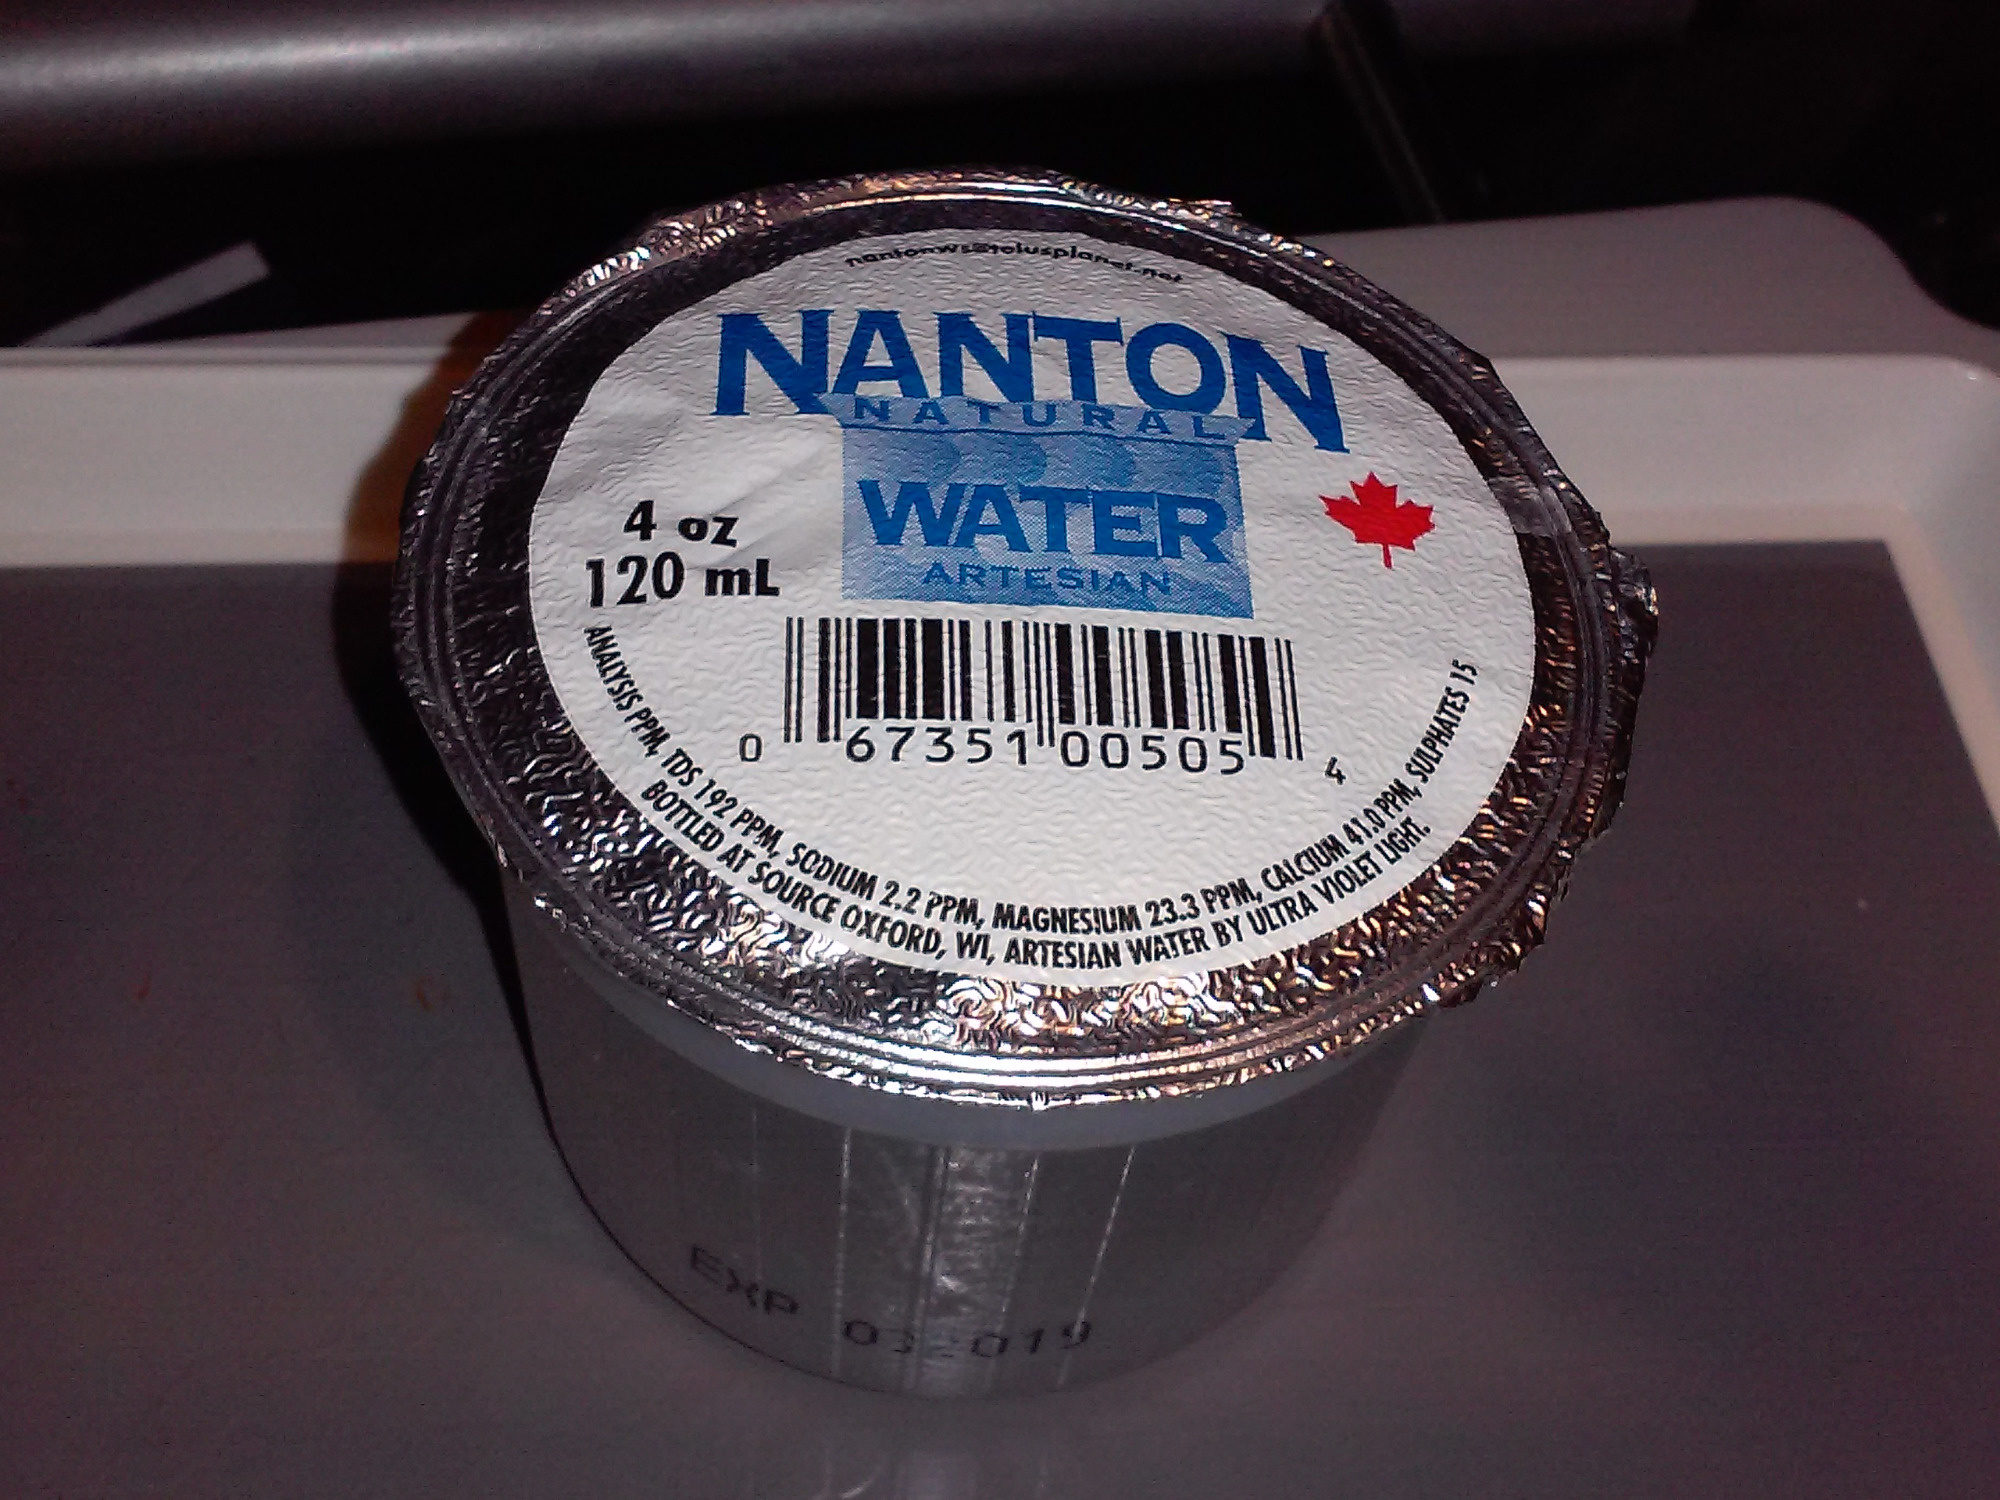 Nanton Natural Water Artesian - Ingrédients